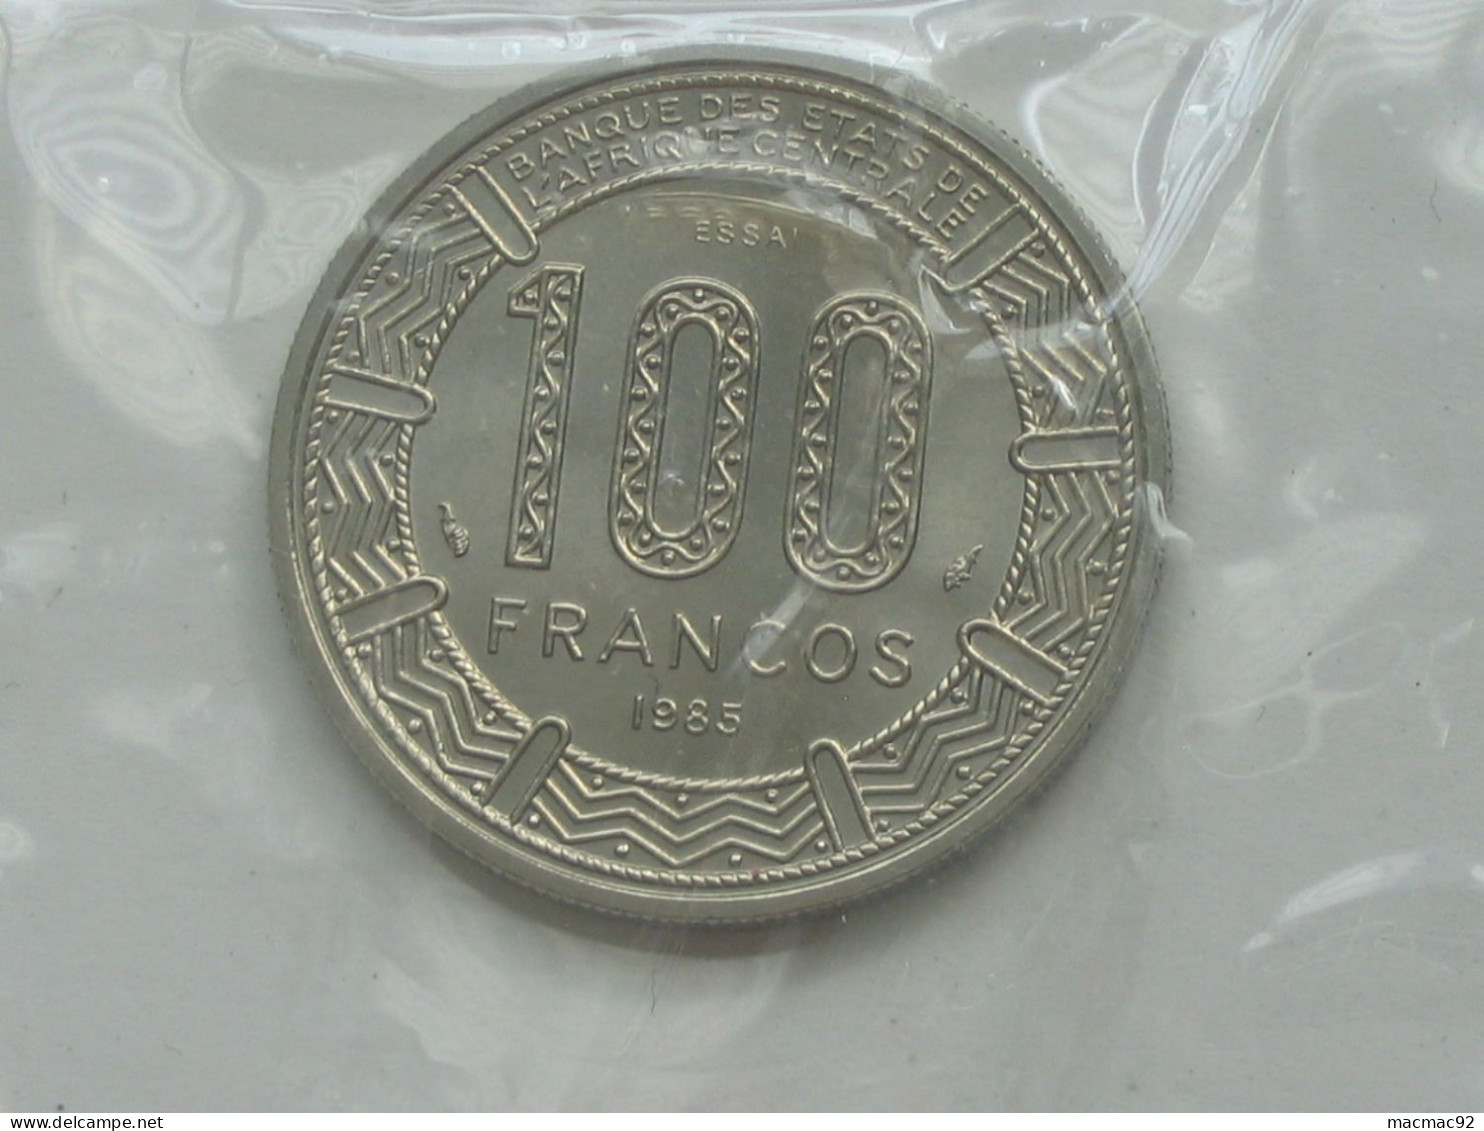 GUINEE EQUATORIALE - Rare ESSAI De 100 Francs 1985 - Banque Des états De L'Afrique Centrale  **** EN ACHAT IMMEDIAT **** - Guinea Ecuatorial